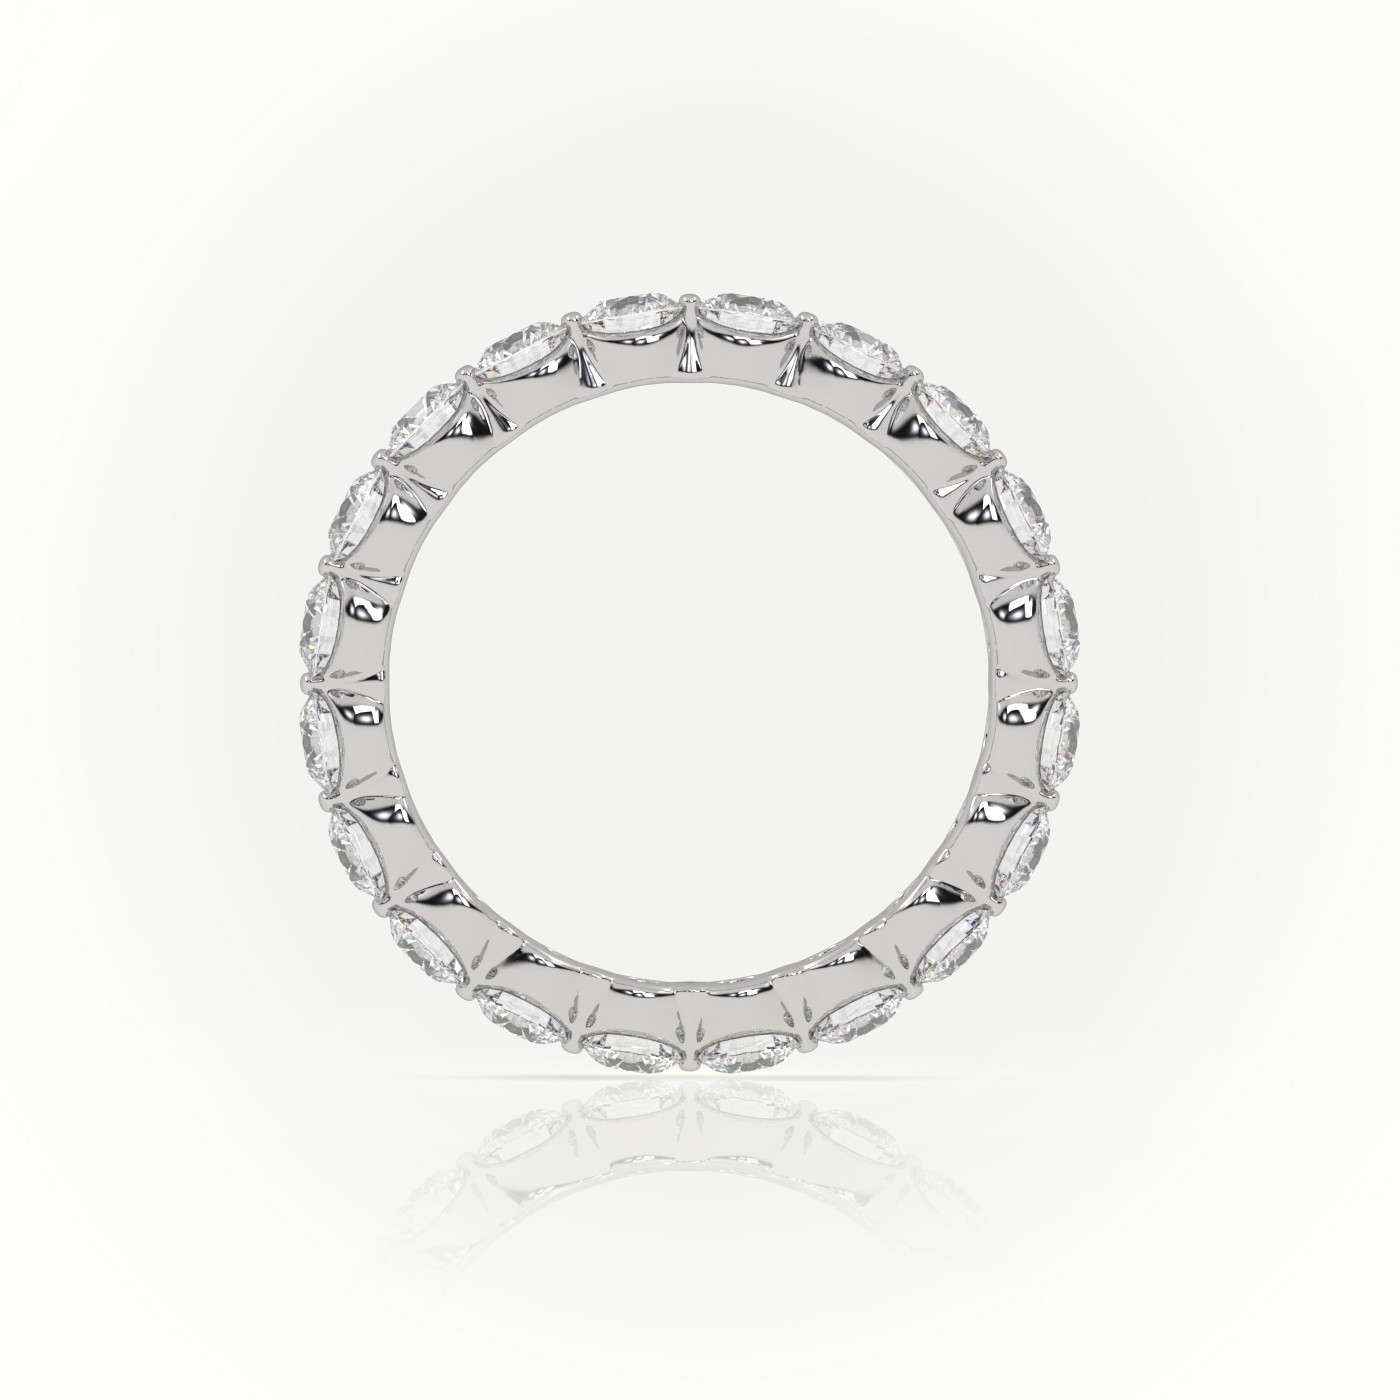 18k white gold  round cut diamonds stylish eternity wedding band Photos & images